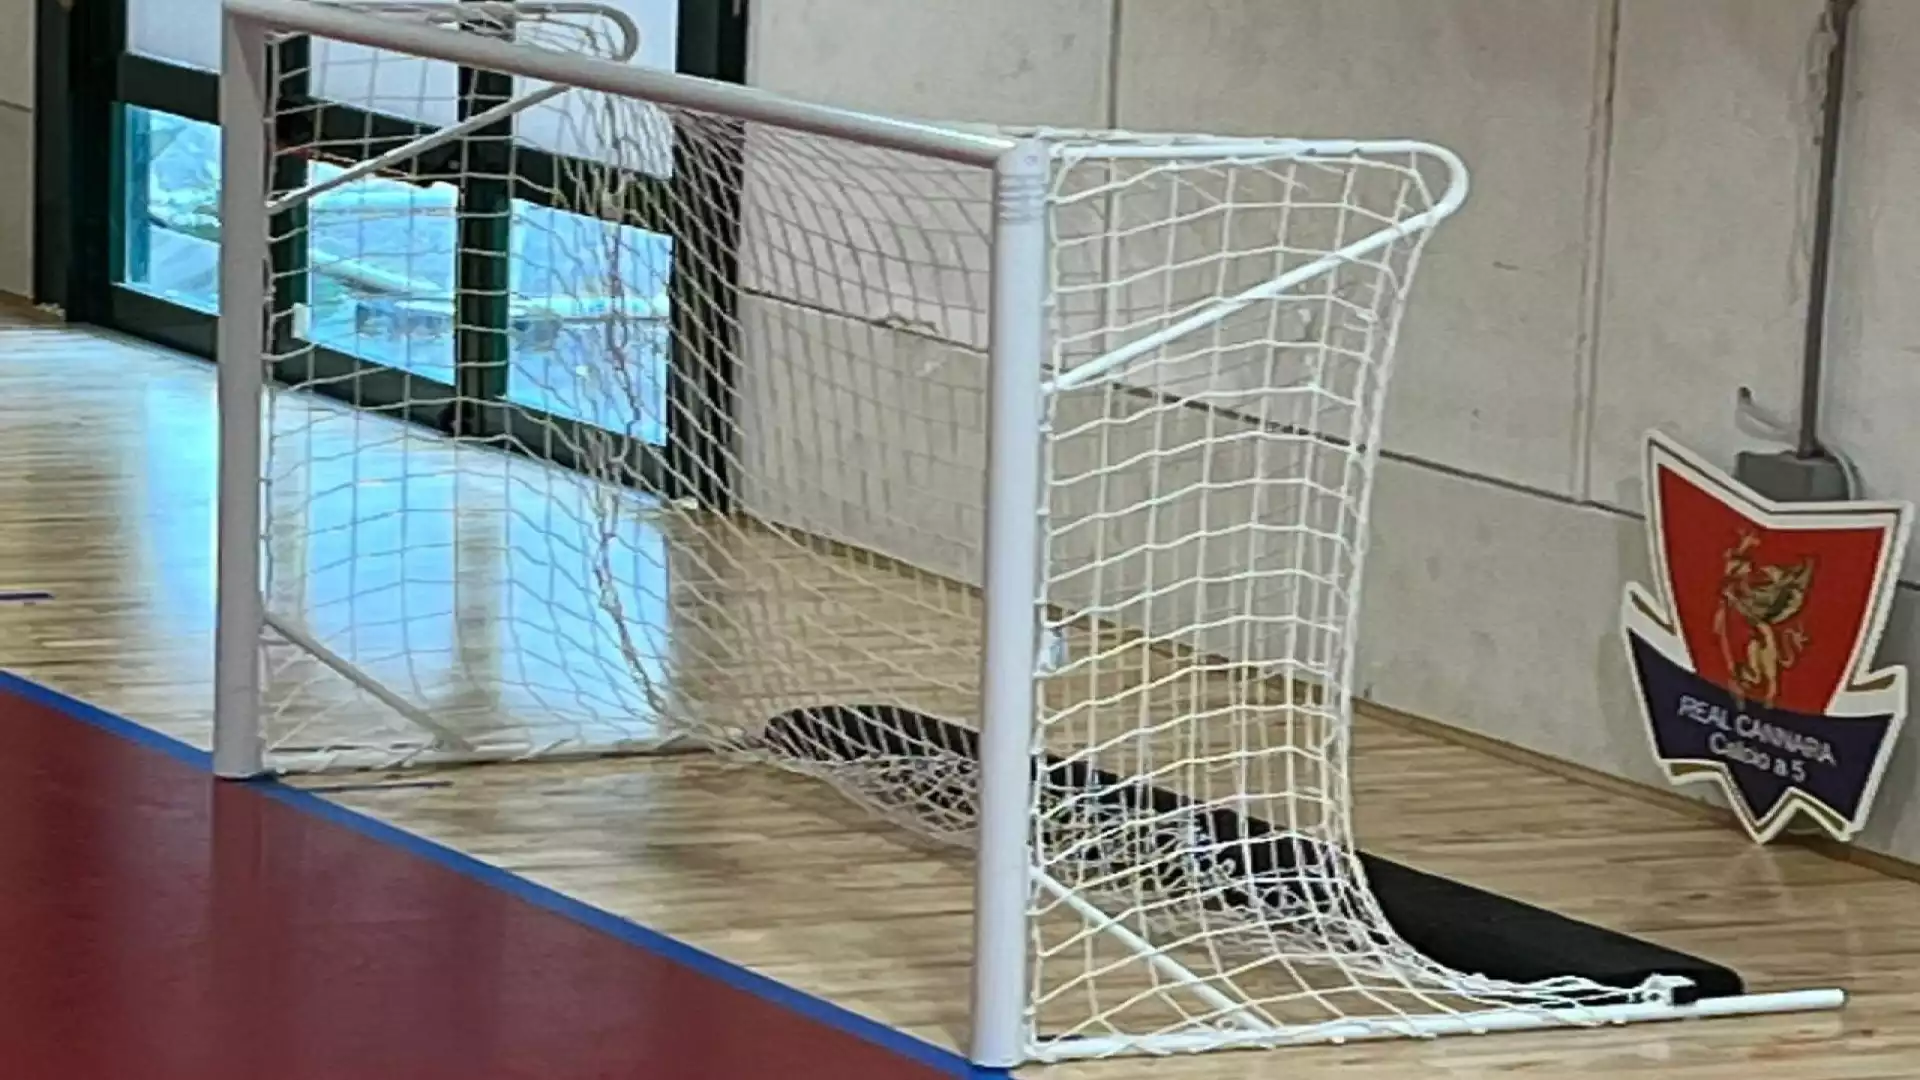 Giocare a Futsal non solo è divertente, ma è anche utile per il calcio a 11: ecco perché